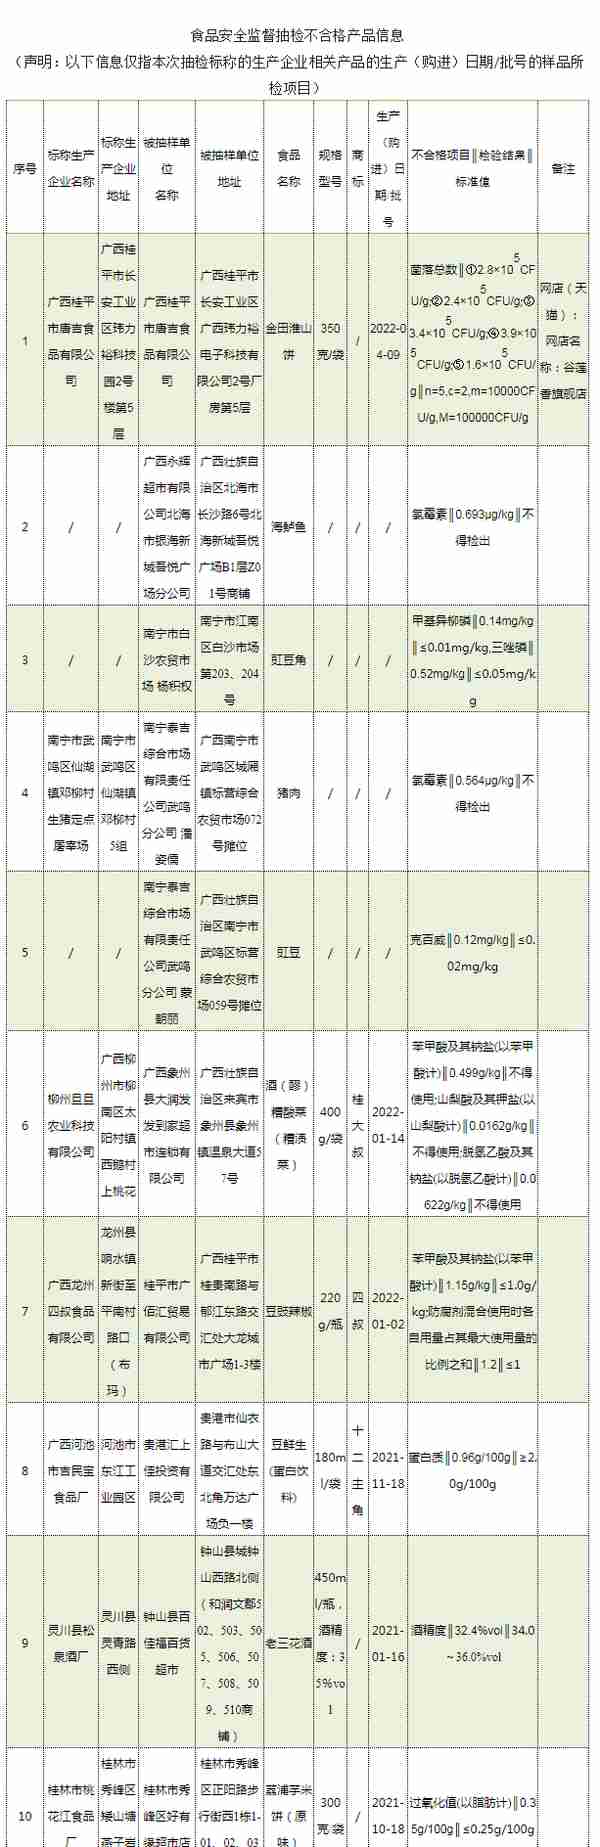 仙湖镇(仙湖镇中心学校教师名单)